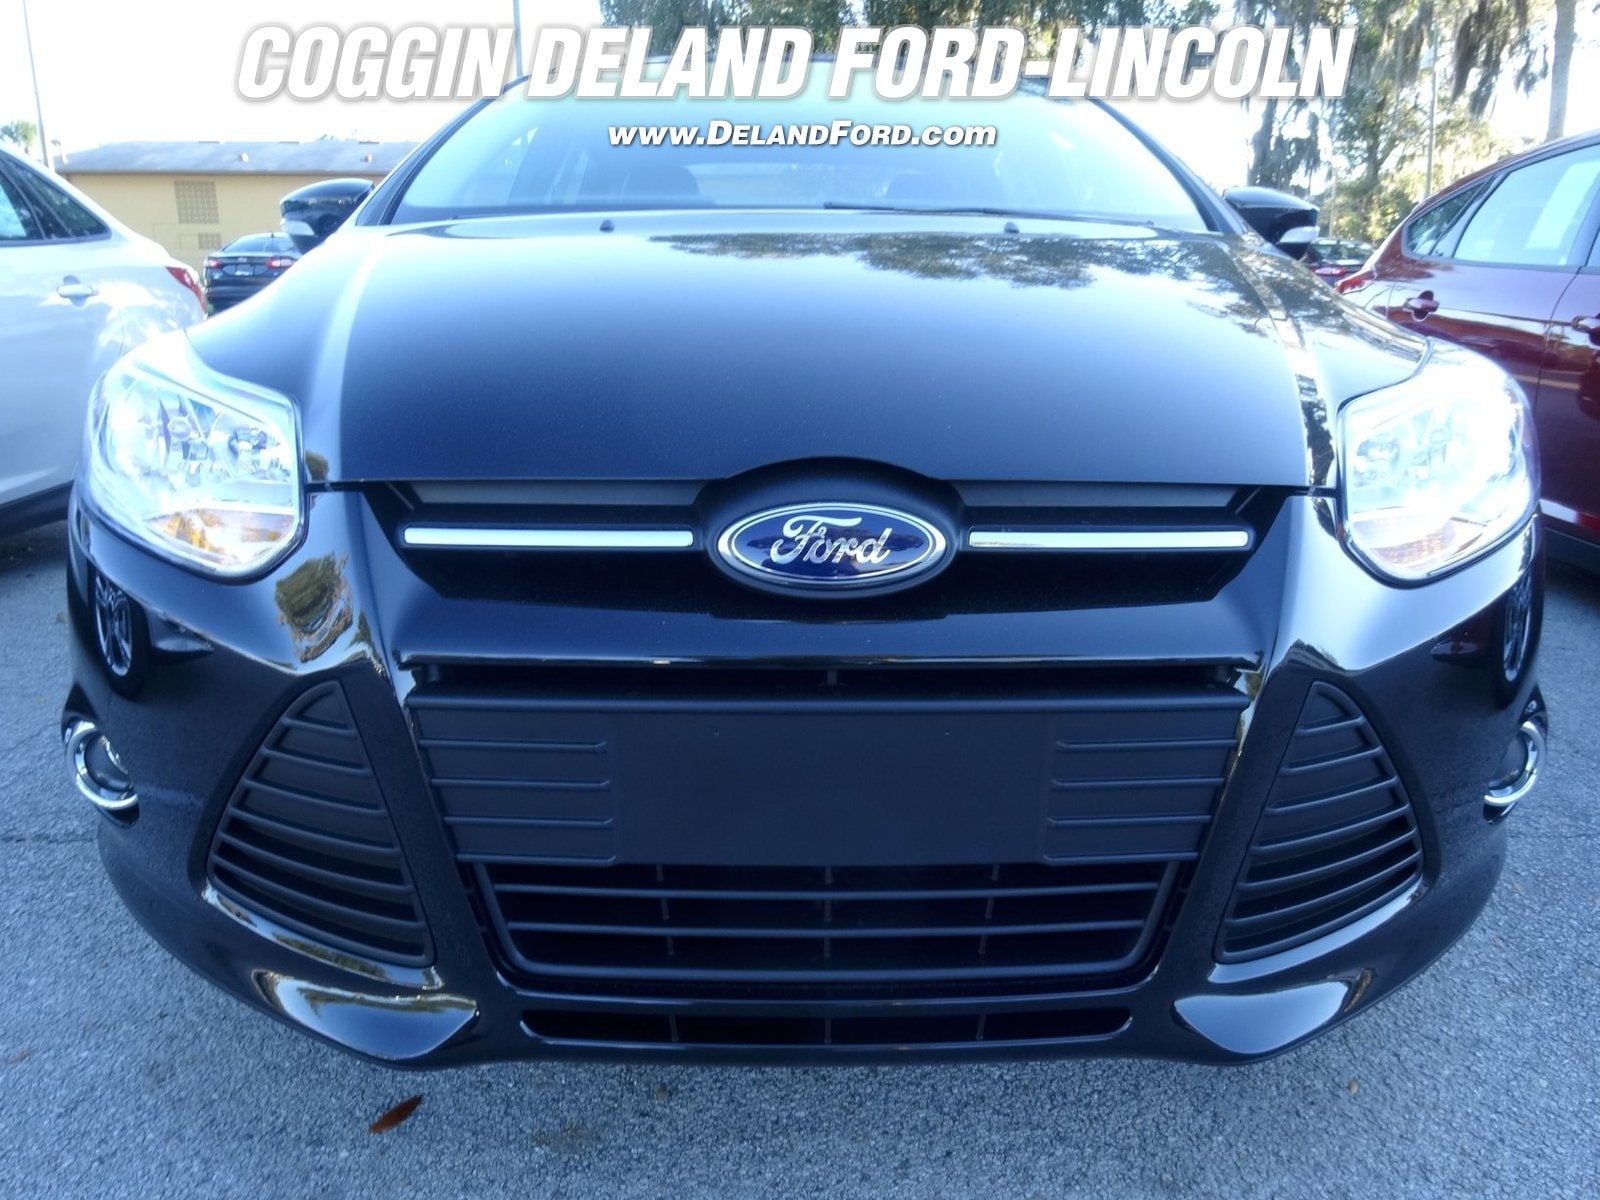 Ford dealership deland florida #2